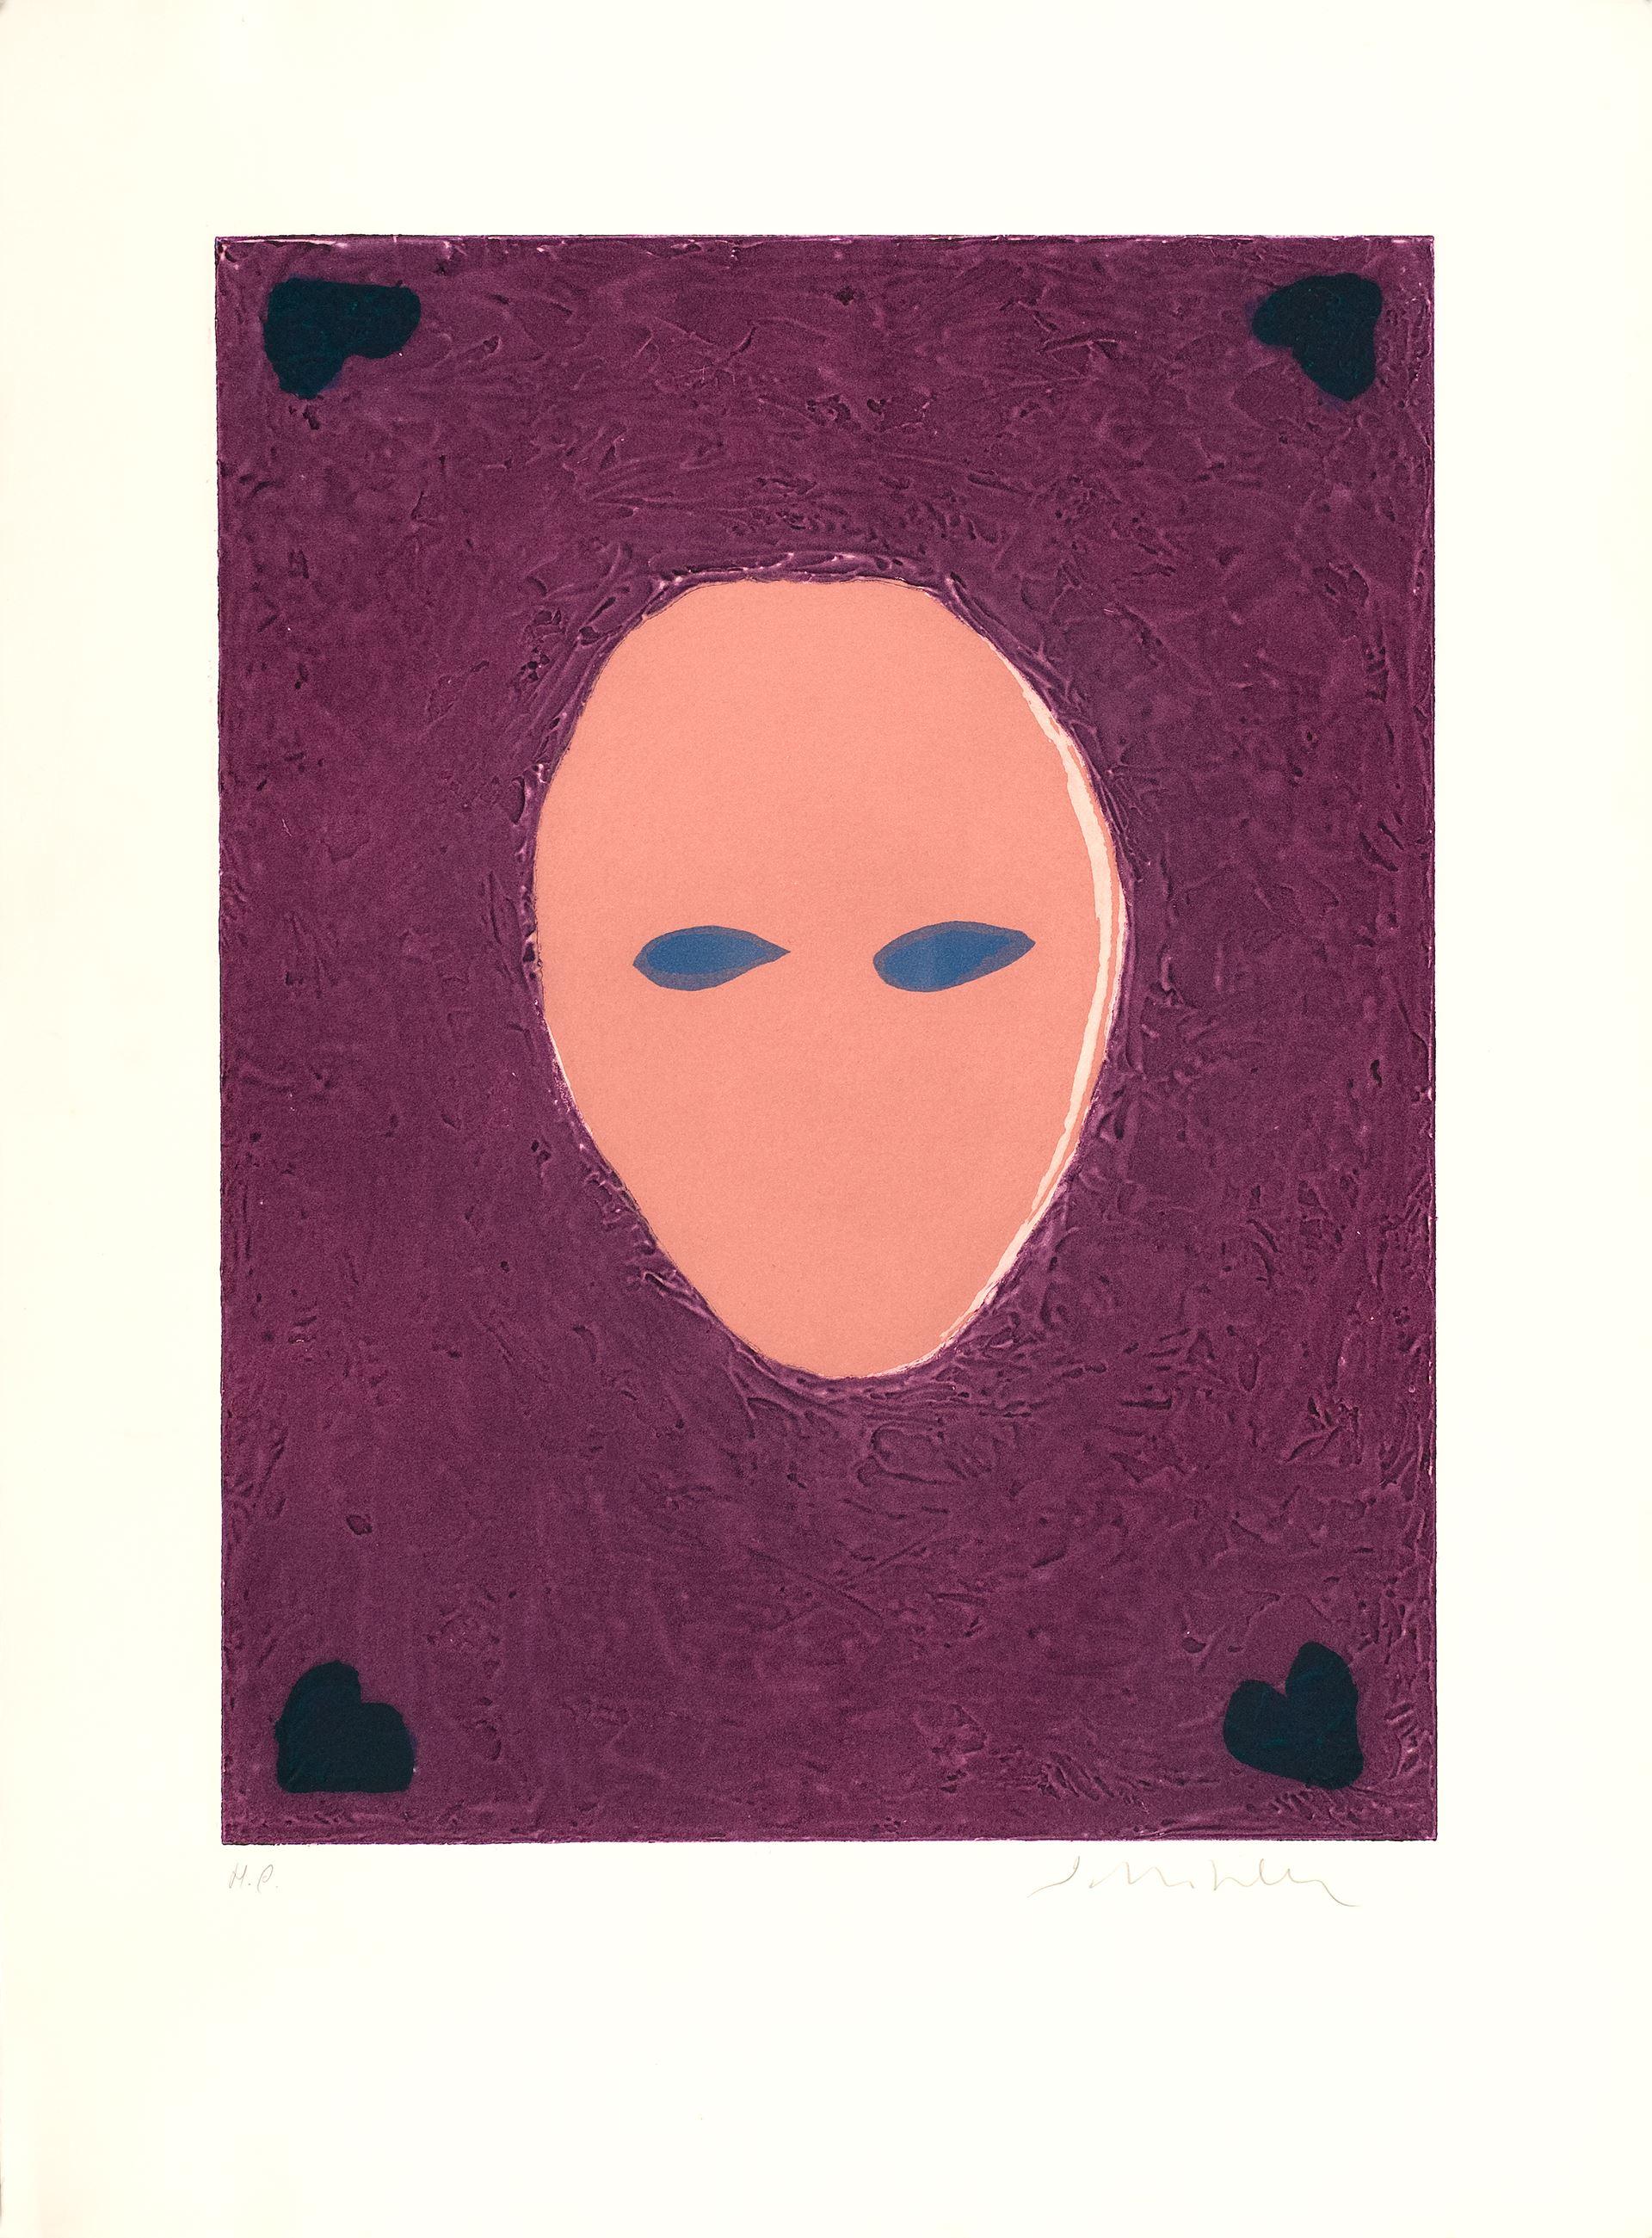 Fritz Scholder (Vereinigte Staaten, 1937-2005)
Die Maske einer geheimnisvollen Frau", 1982
Gravur auf Papier
30 x 22,1 Zoll (76 x 56 cm)
ID: SCH1341-002-000
Ungerahmt